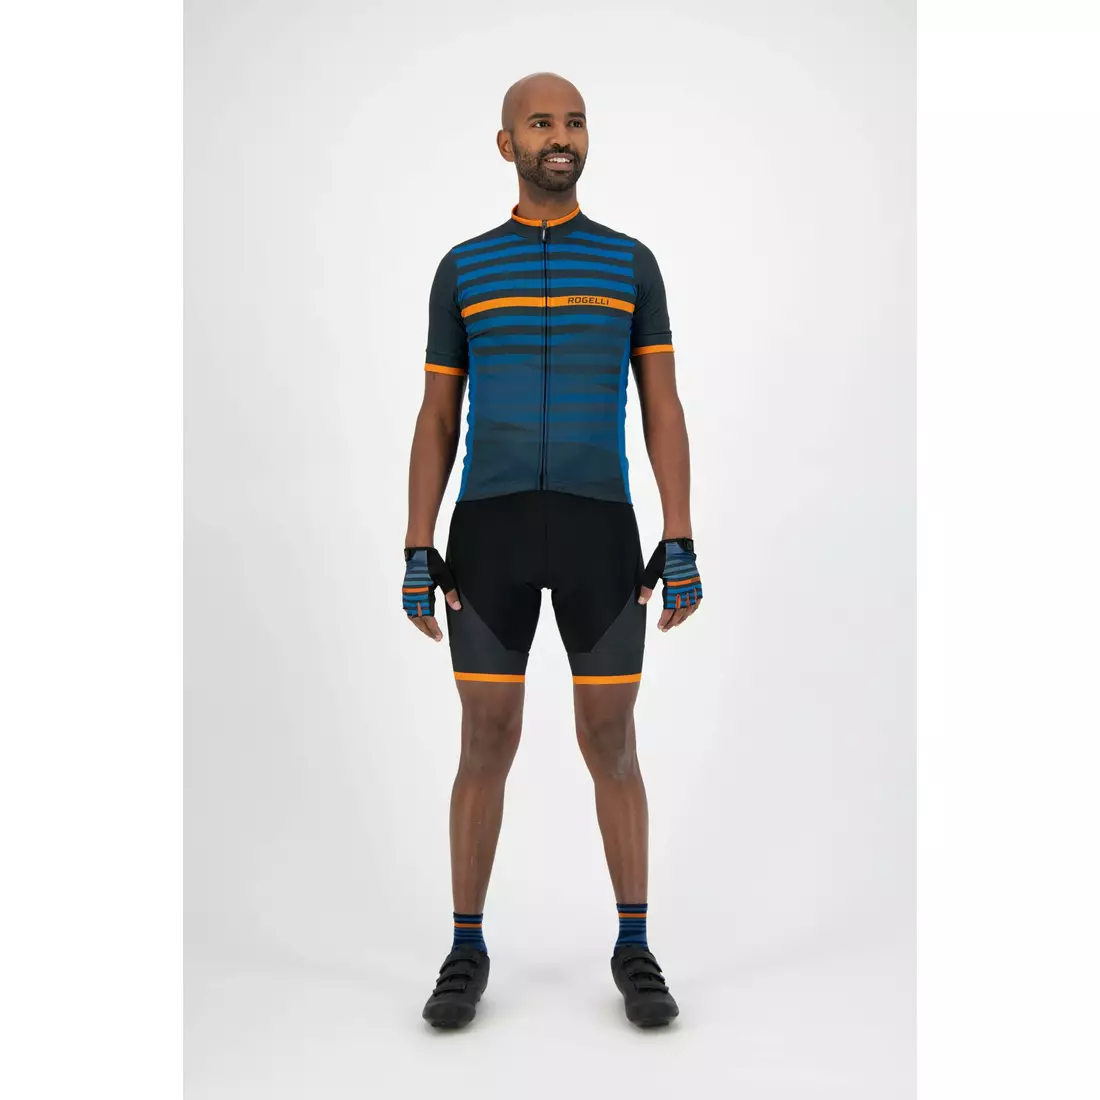 ROGELLI tricou pentru bărbați pentru biciclete STRIPE blue/orange 001.102